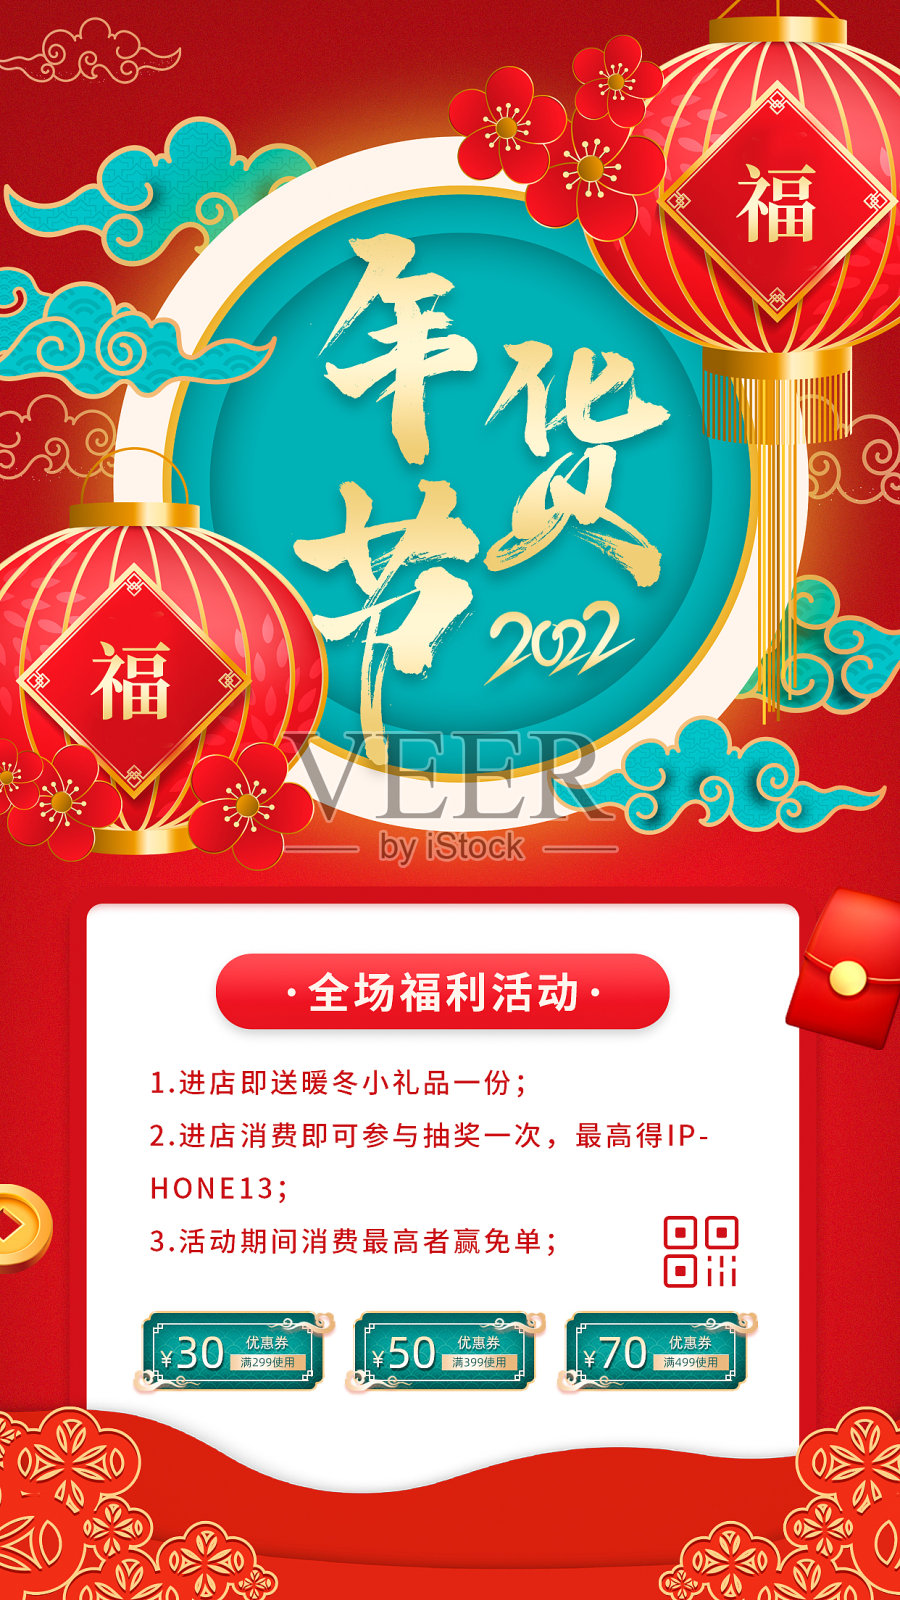 红色喜庆大气年货节新年春节促销活动宣传手机海报设计模板素材